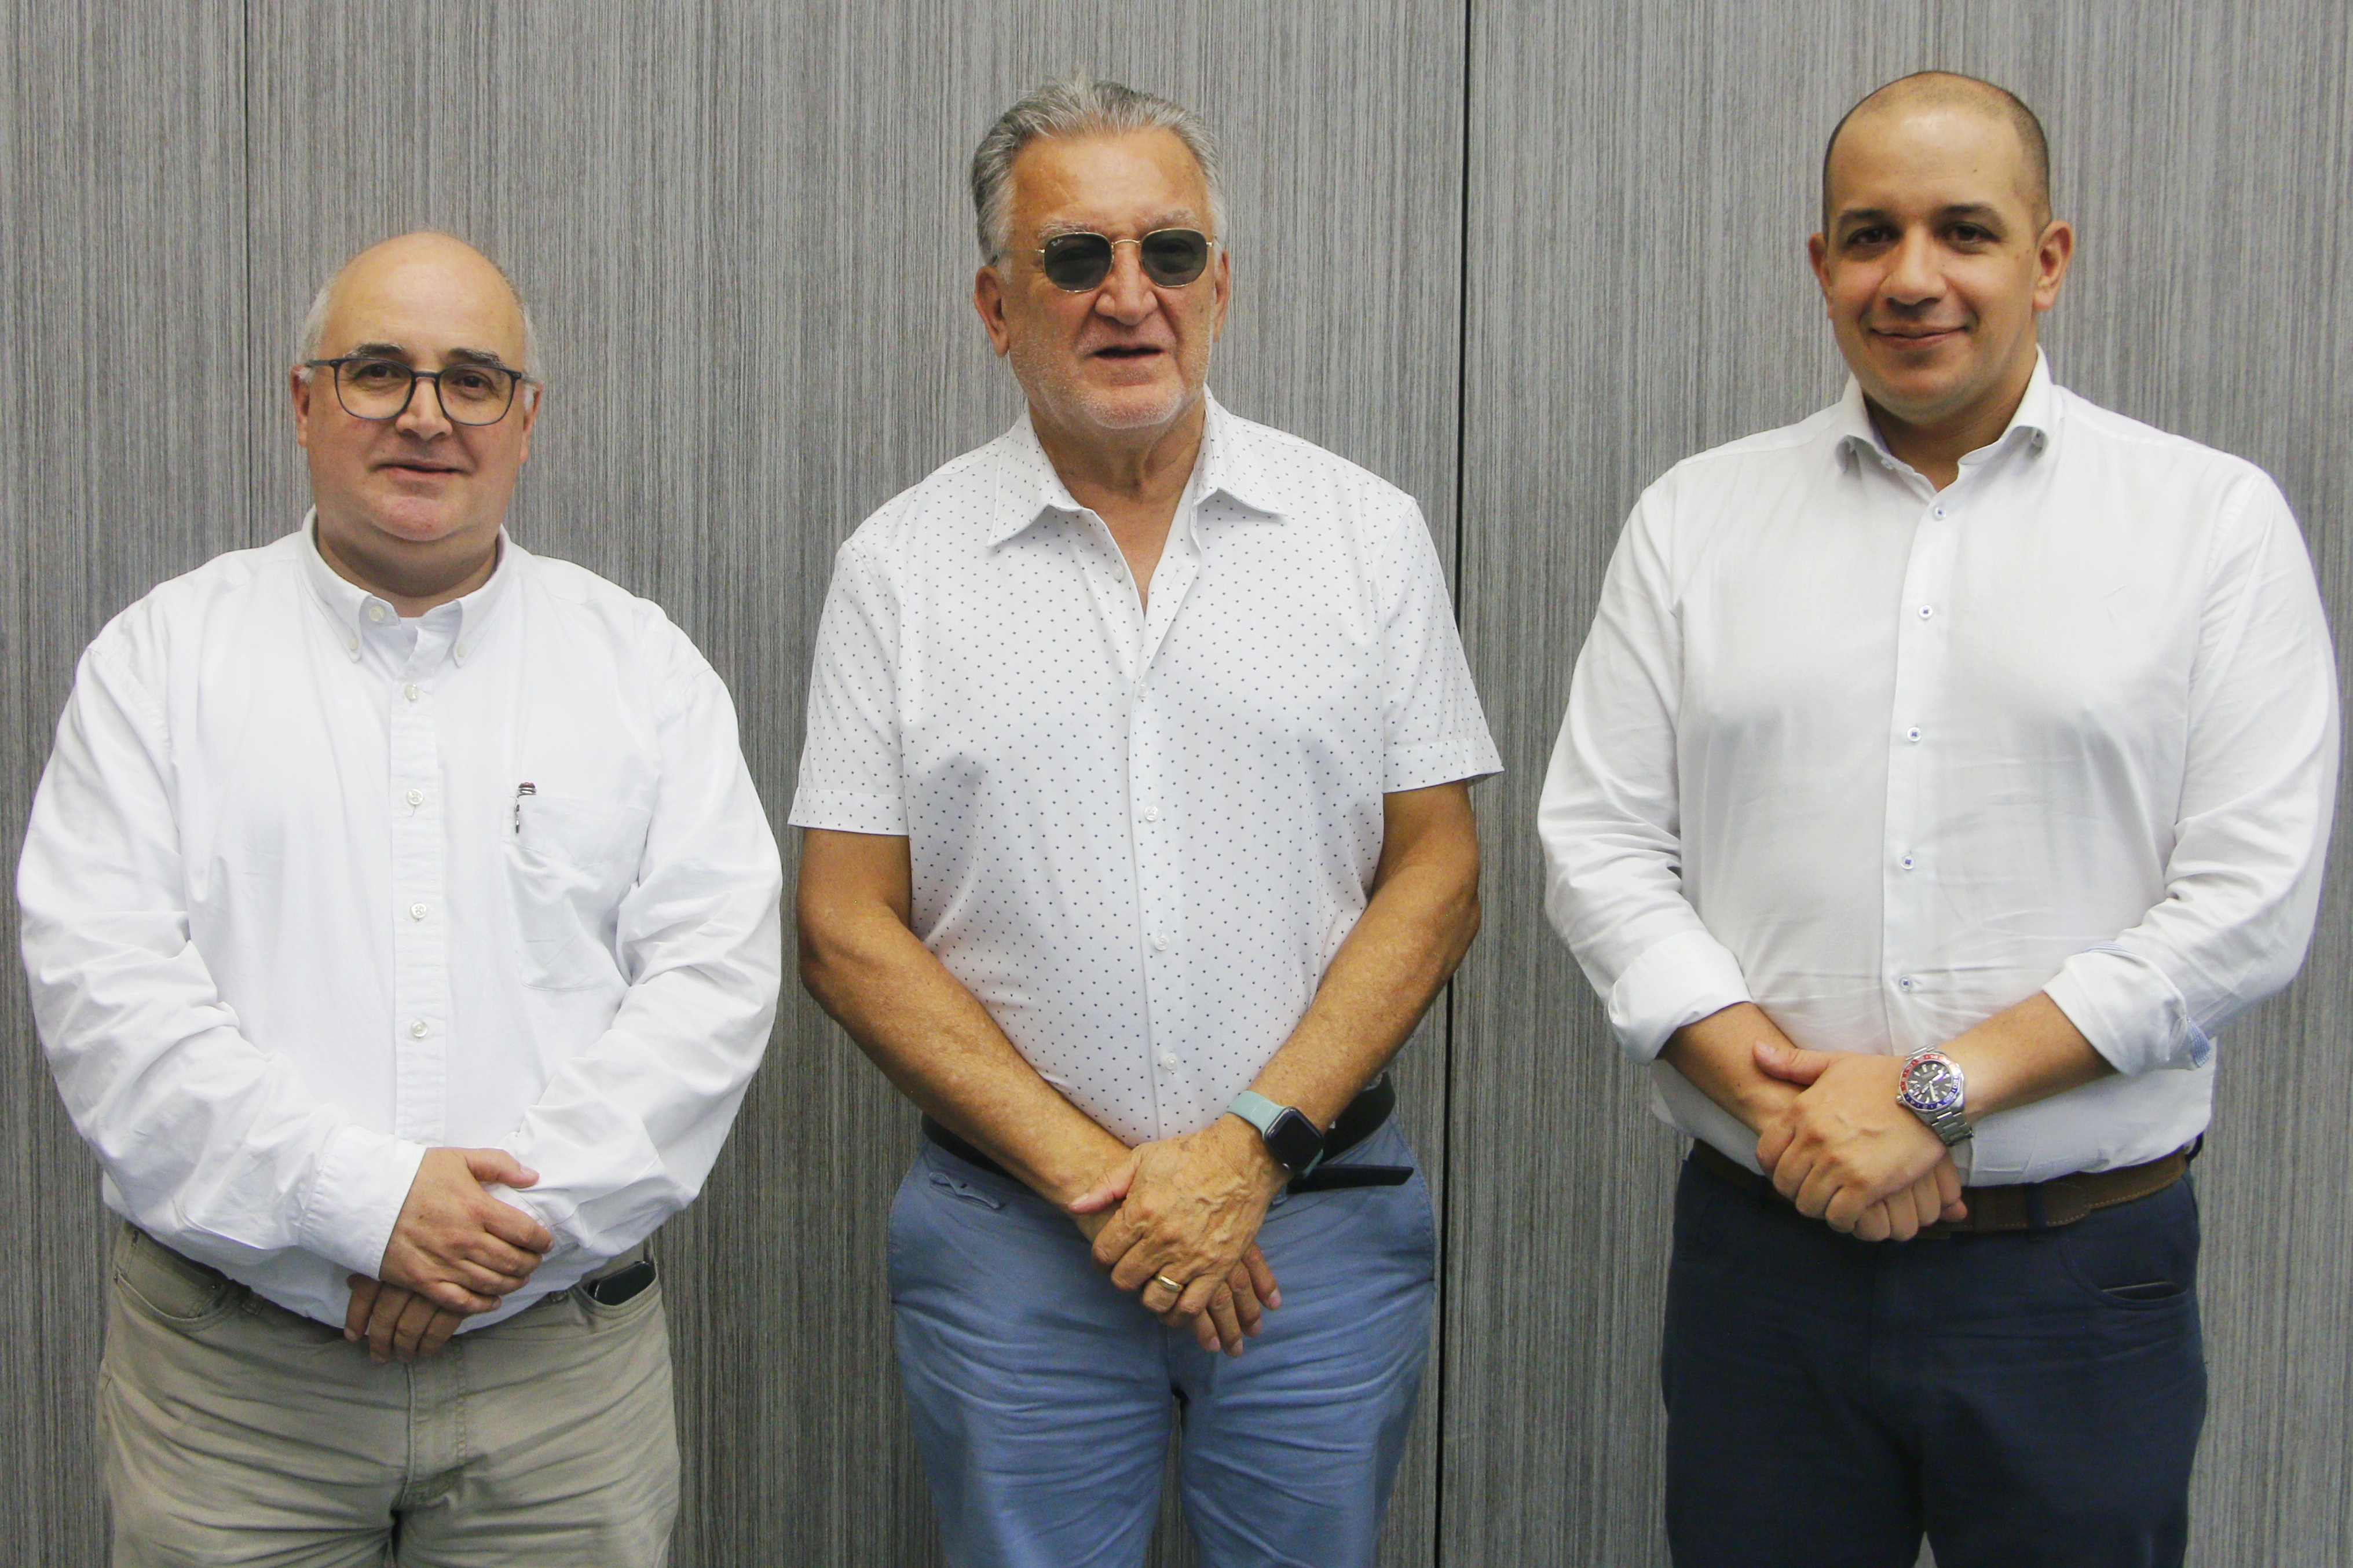 De izquierda, Santiago Ochoa, vicepresidente de Agua Potable de EPM;  Dagoberto Quiroga, superintendente de Servicios Públicos Domiciliarios; y Jorge Andrés Carrillo, gerente de EPM.